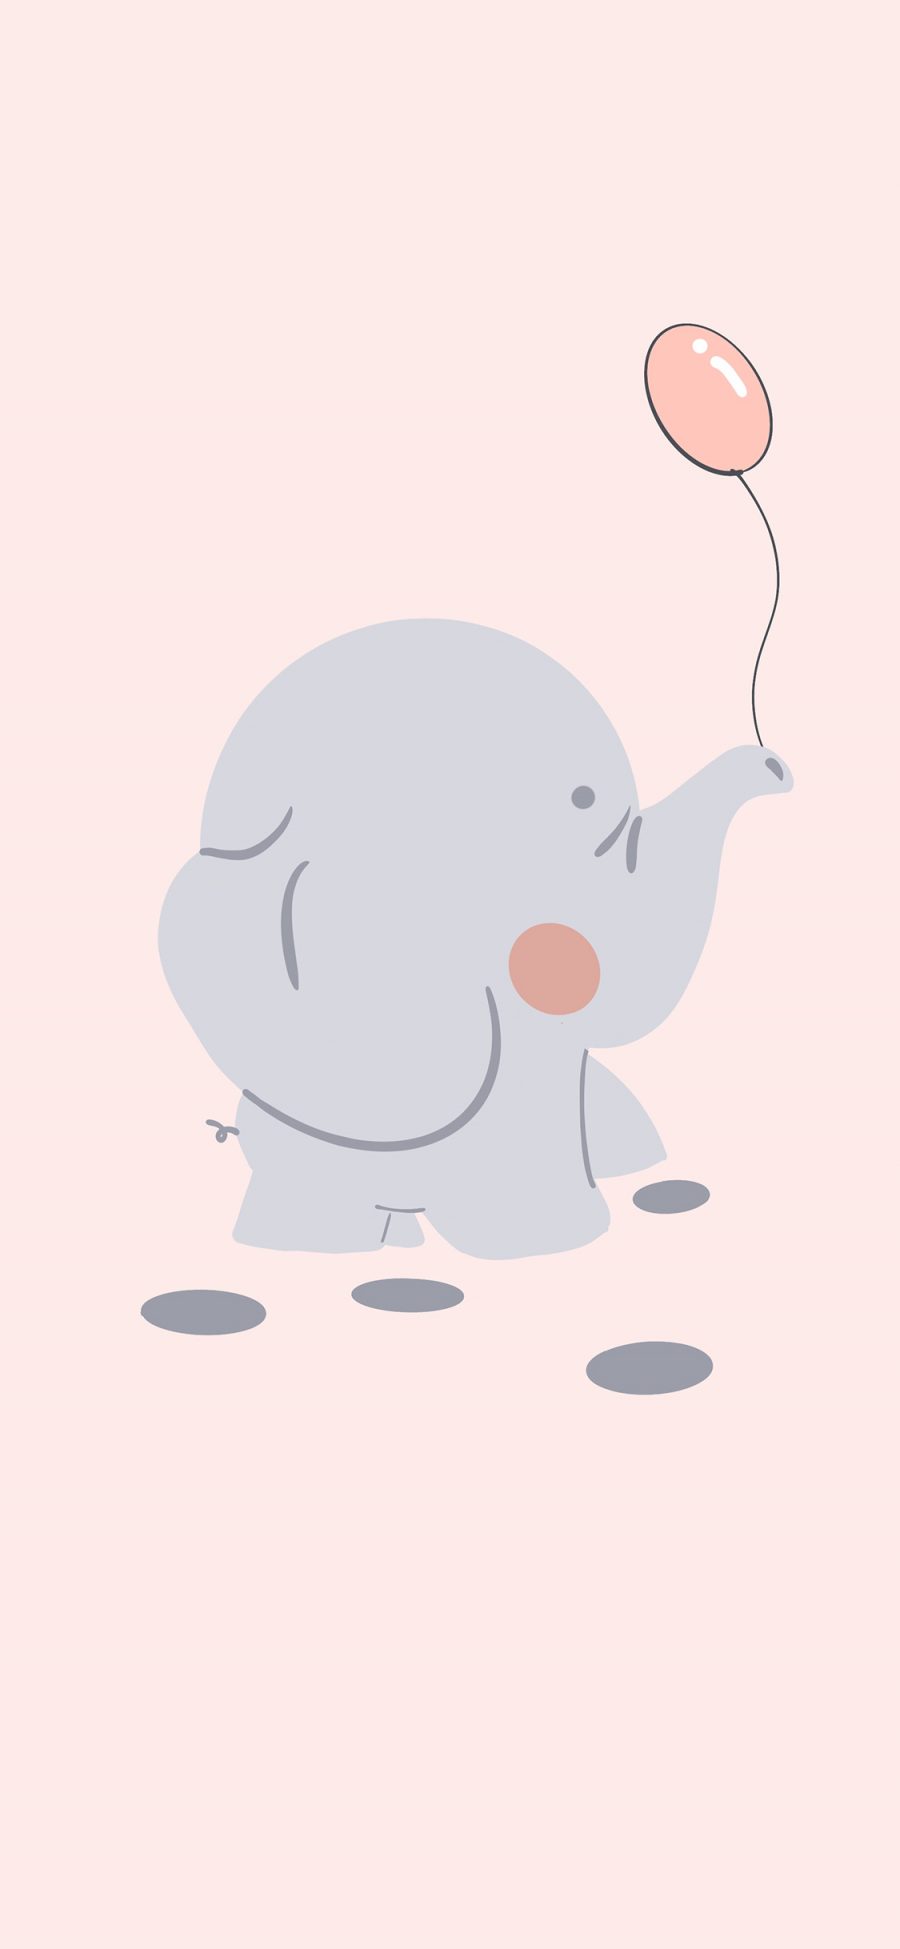 [2436×1125]气球 可爱 卡通 小象 苹果手机动漫壁纸图片